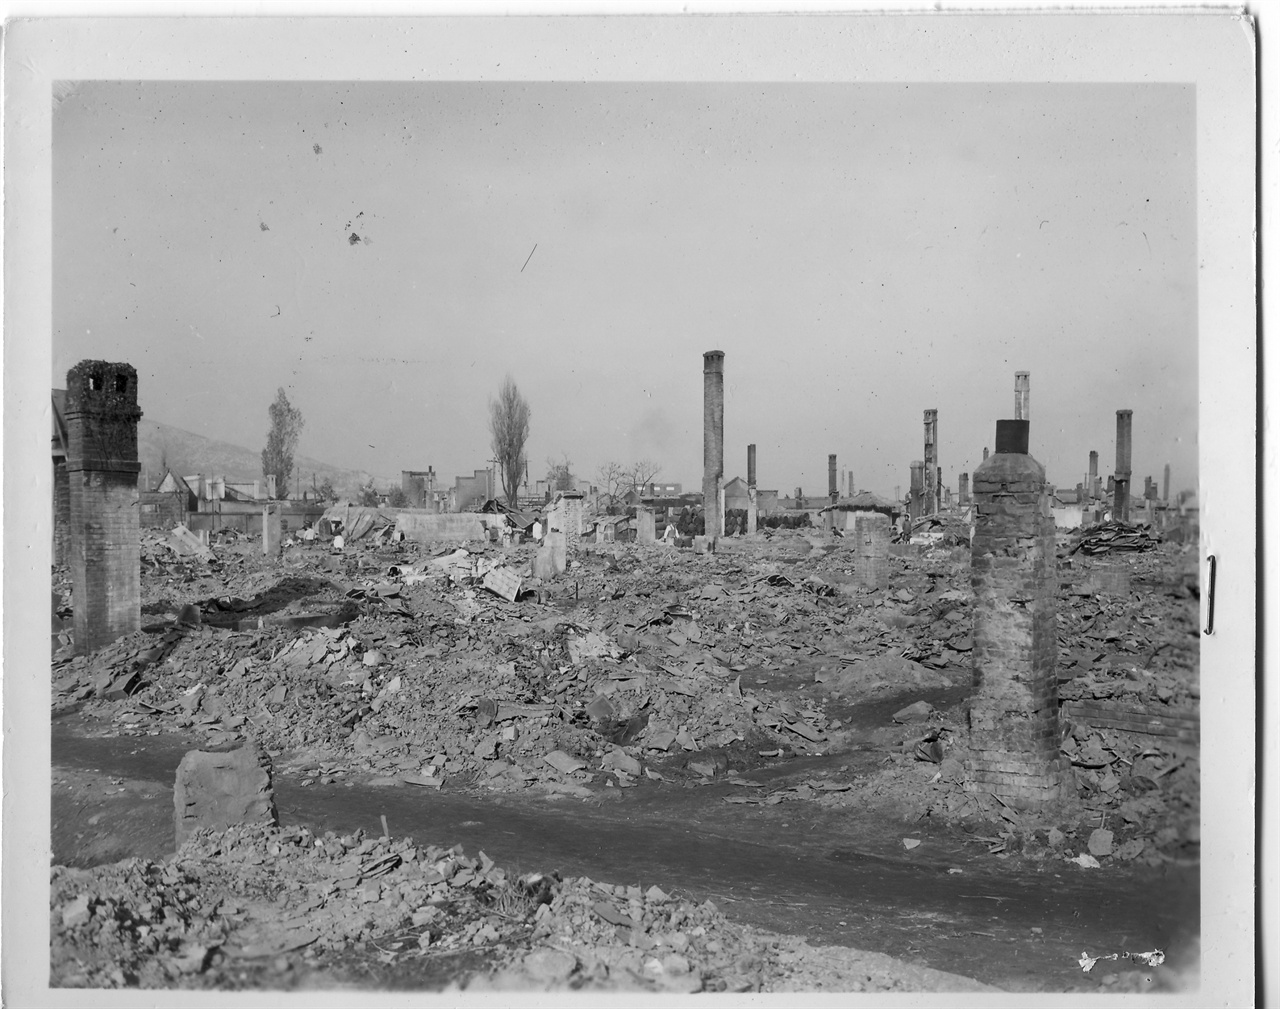 1950. 11. 20 원산, 전란으로 도시 전체가 파괴되고 건물 기둥과 굴뚝 일부만 남아 있다.